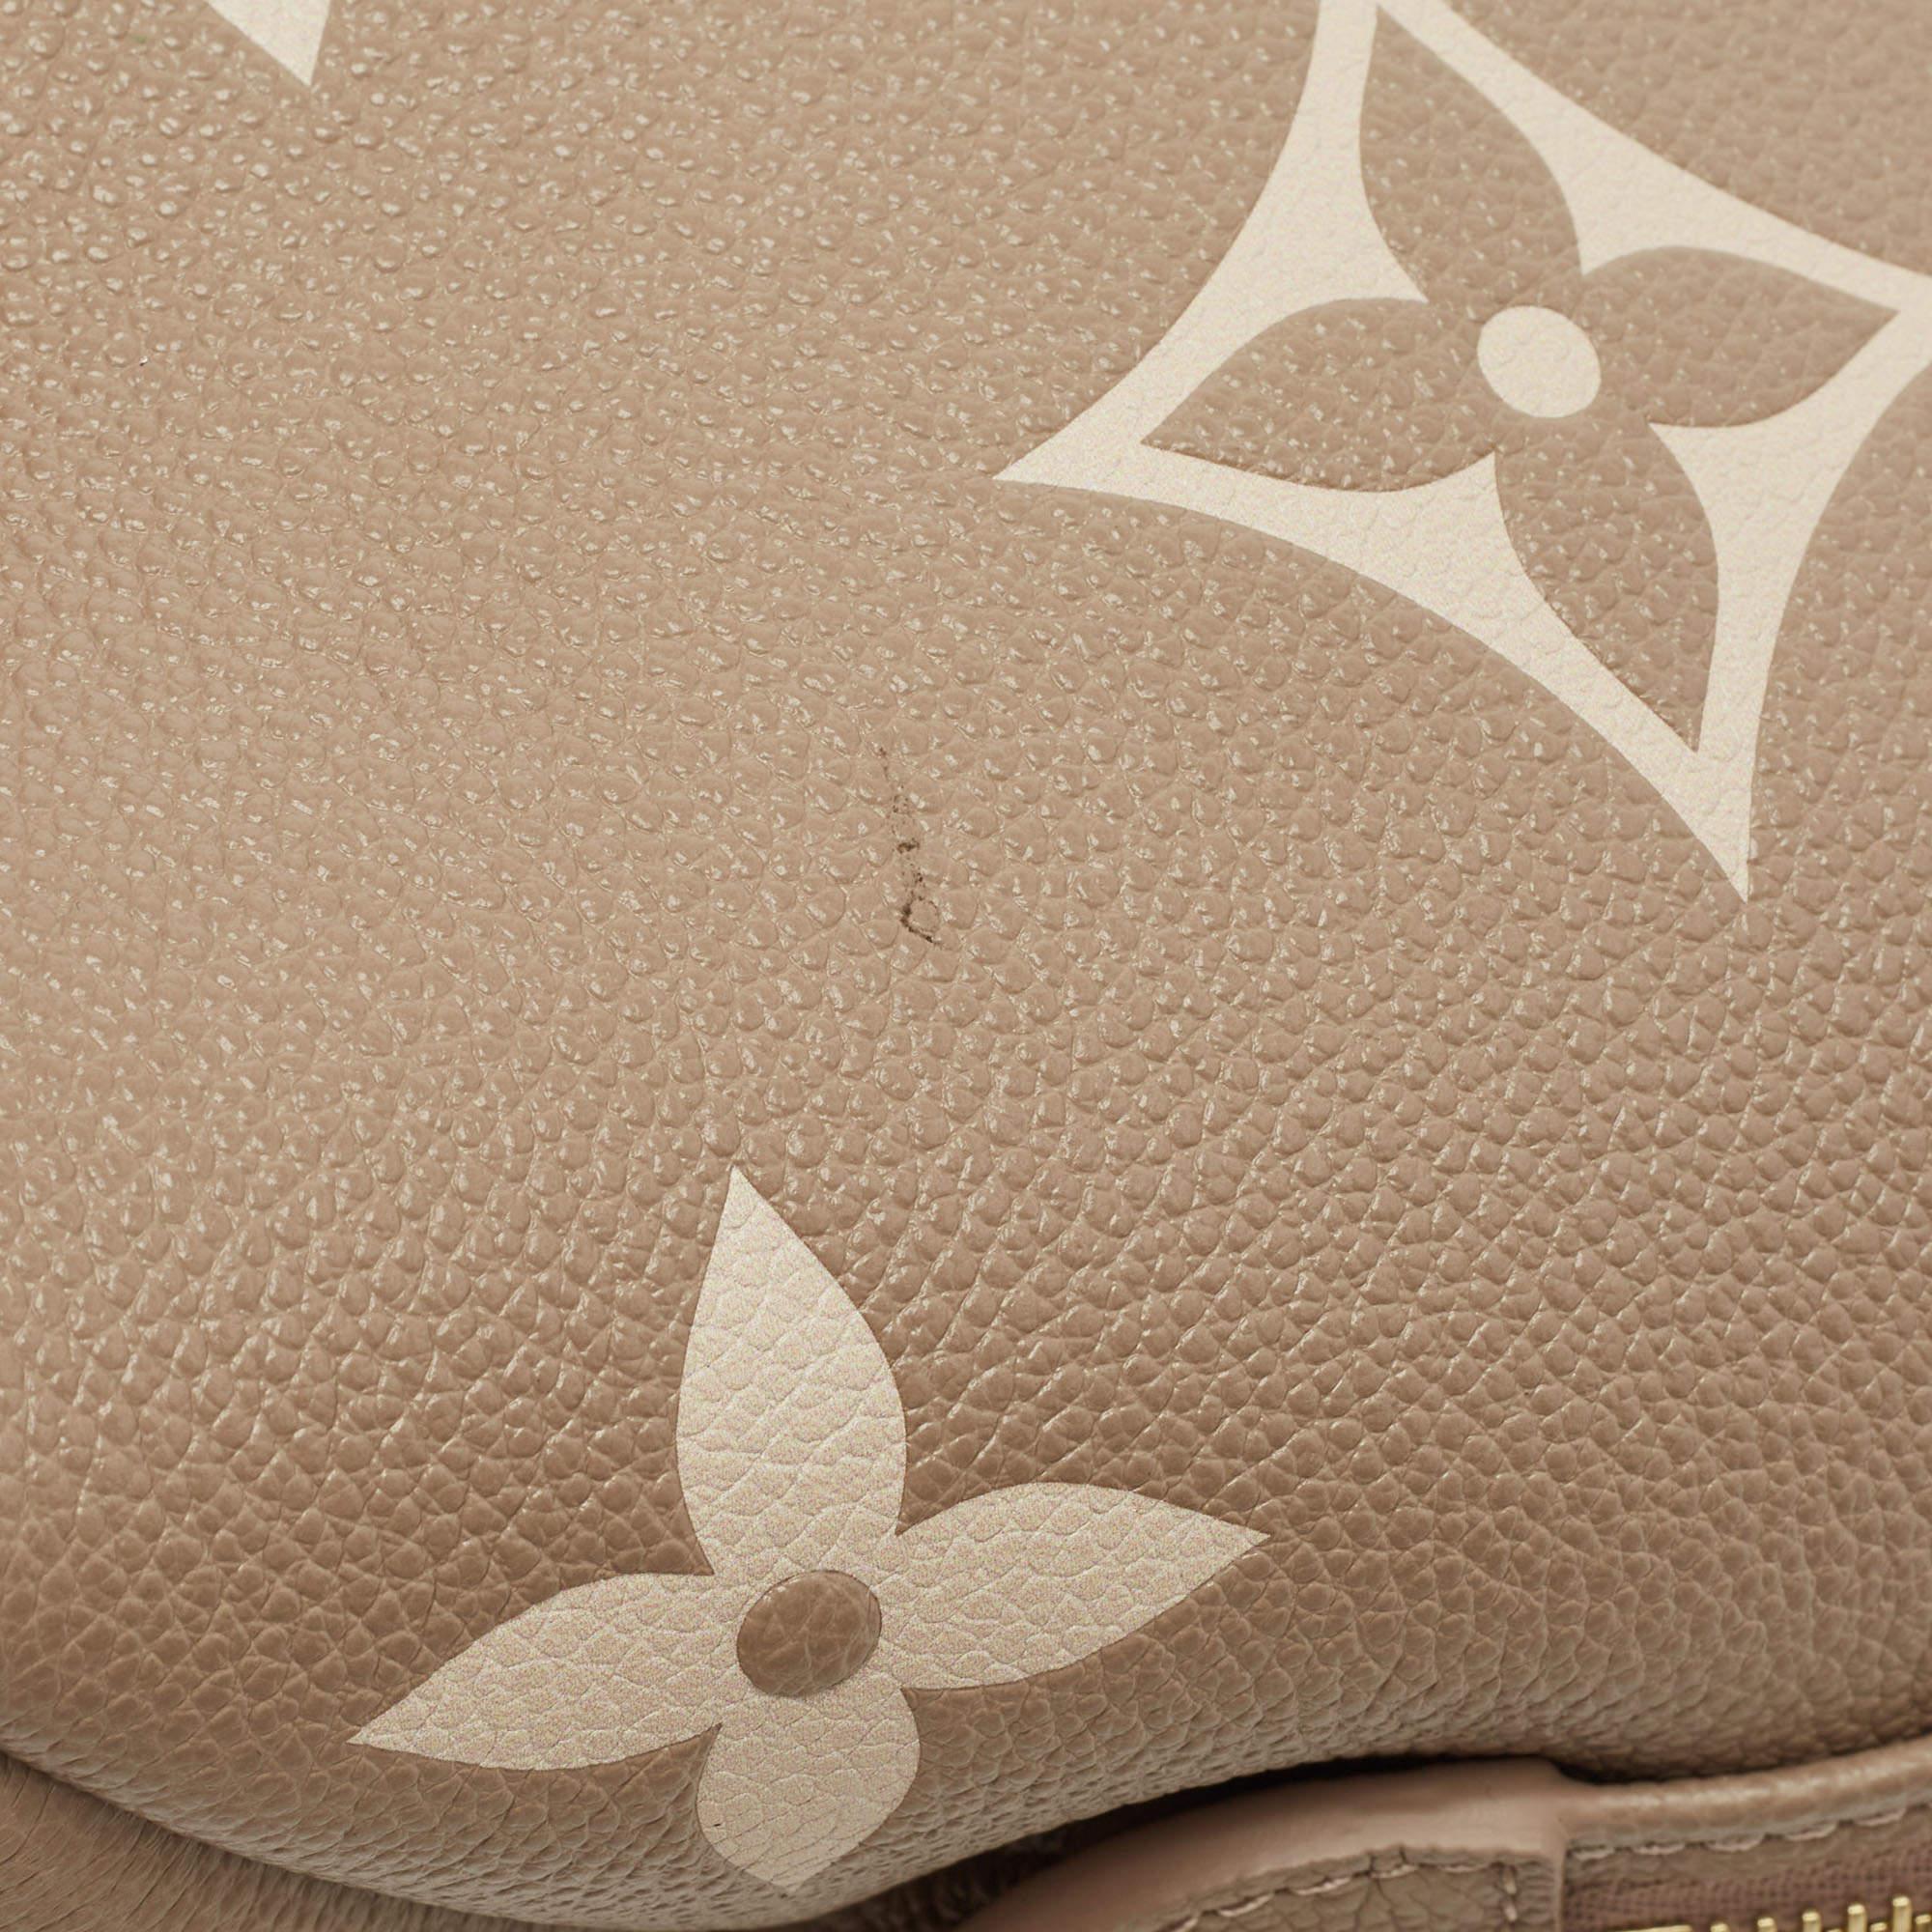 Louis Vuitton Bicolor Monogram Empriente Leather Petite Palais Bag For Sale 5